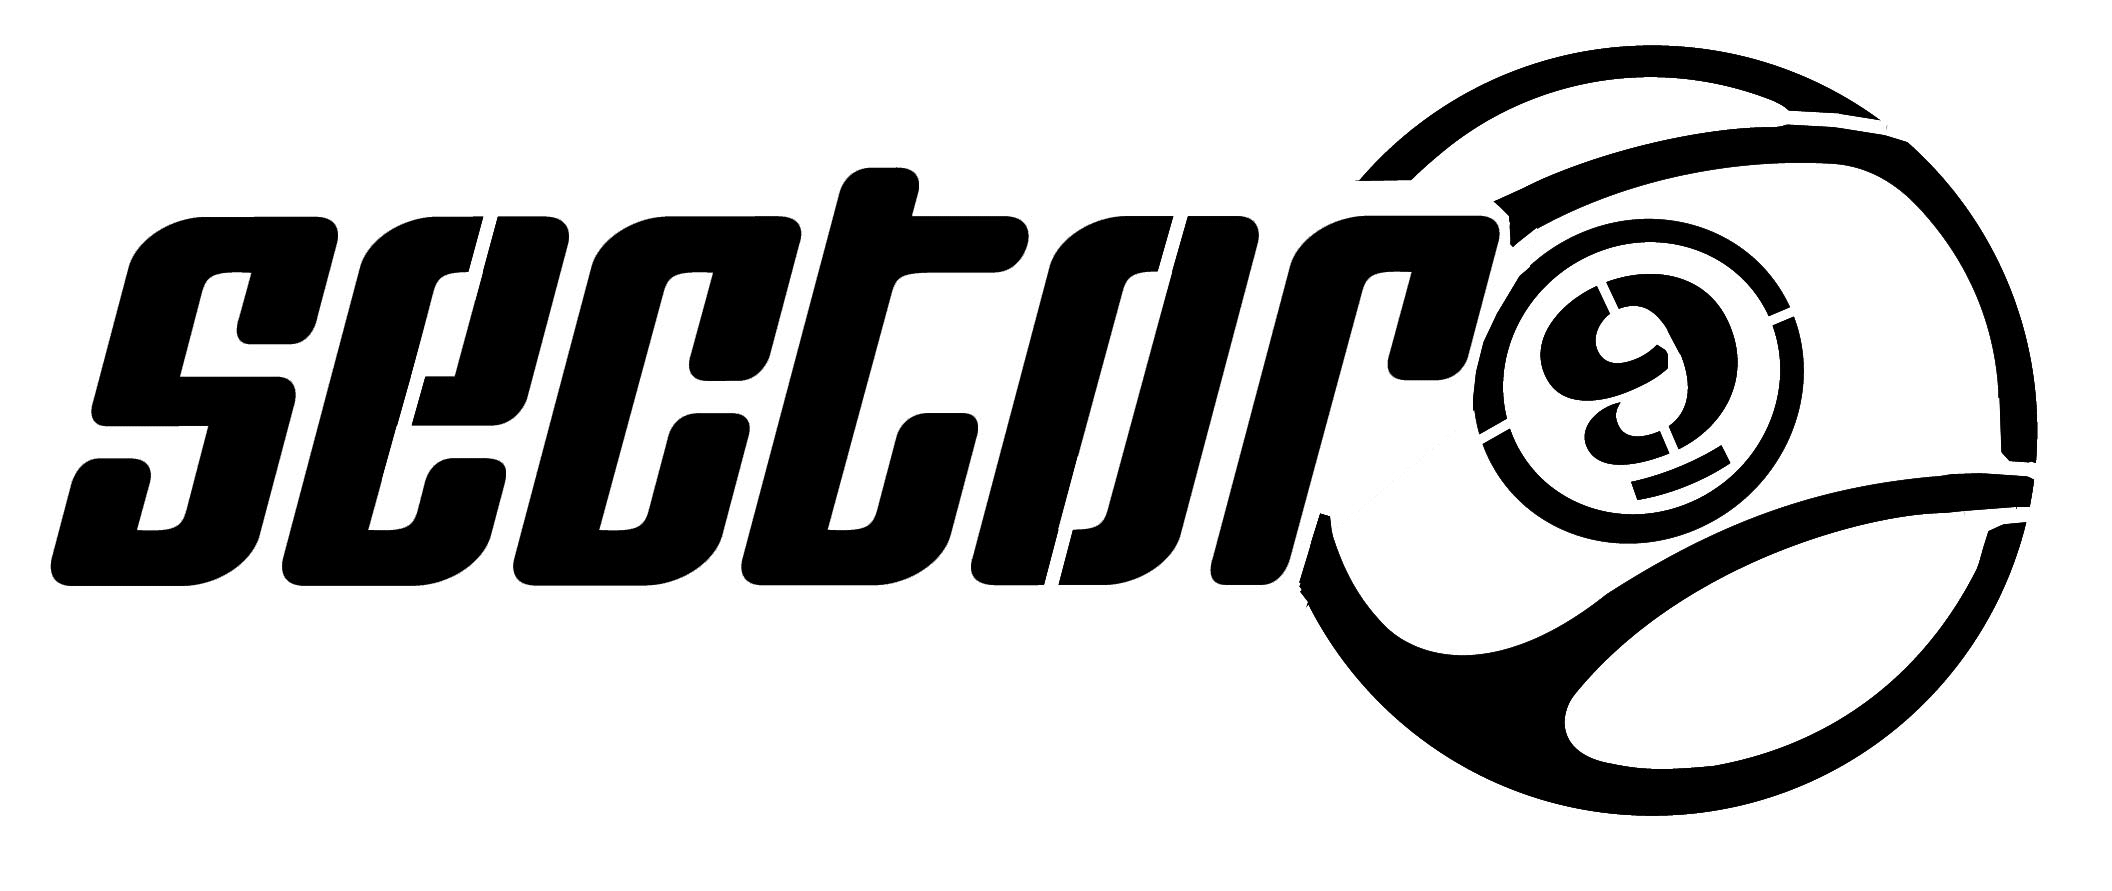 Sector 9 Logo - Sector Logos